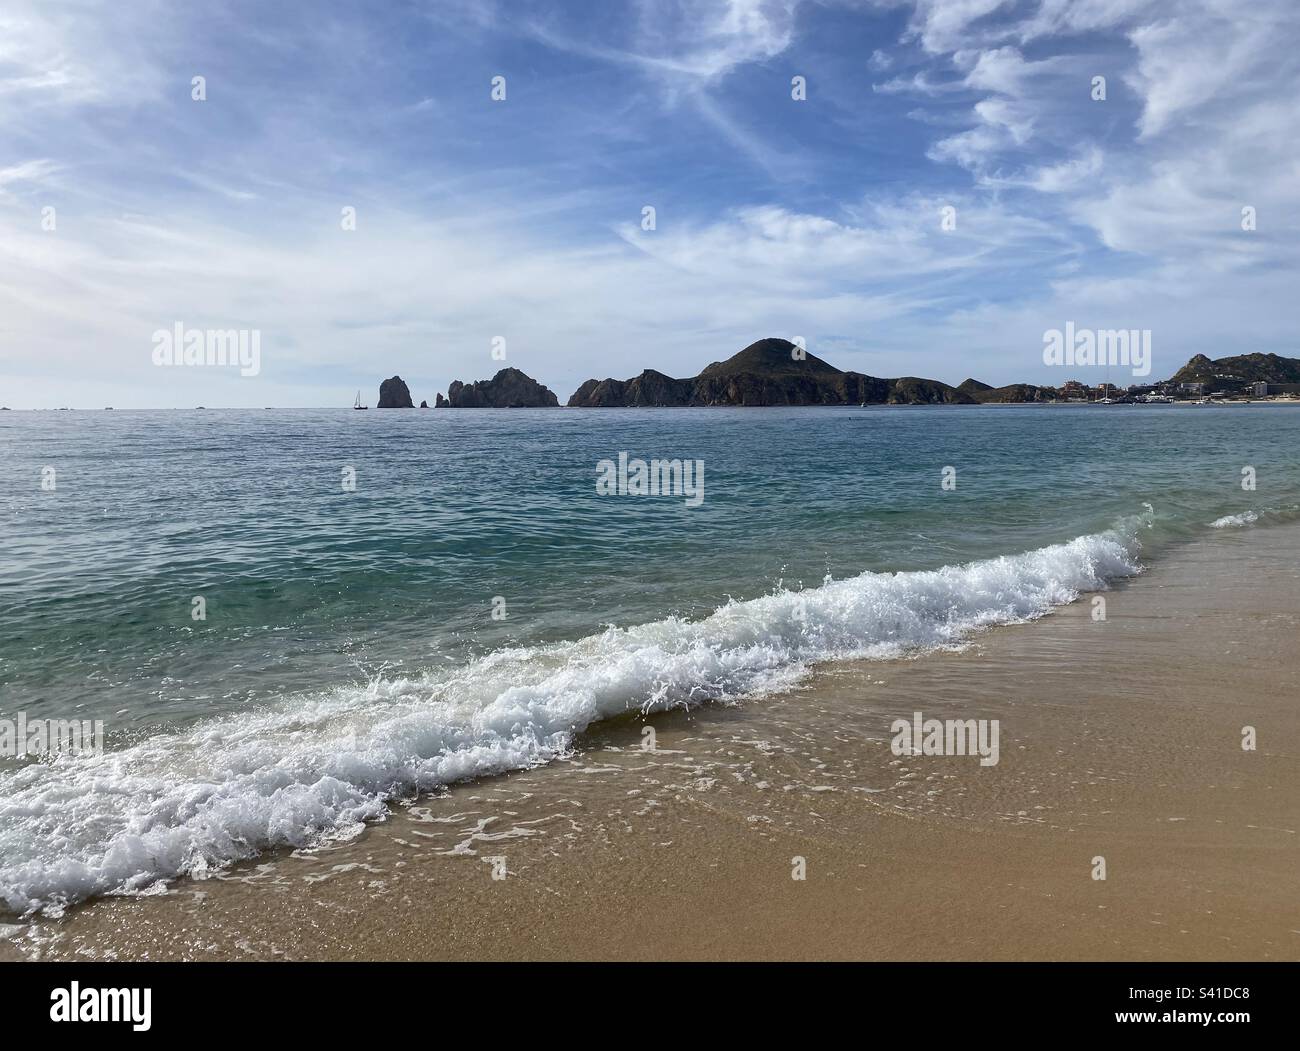 Die Welle stürzt auf einen Strand mit Felsformationen im Hintergrund. Blauer Himmel mit ein paar Wolken. Stockfoto